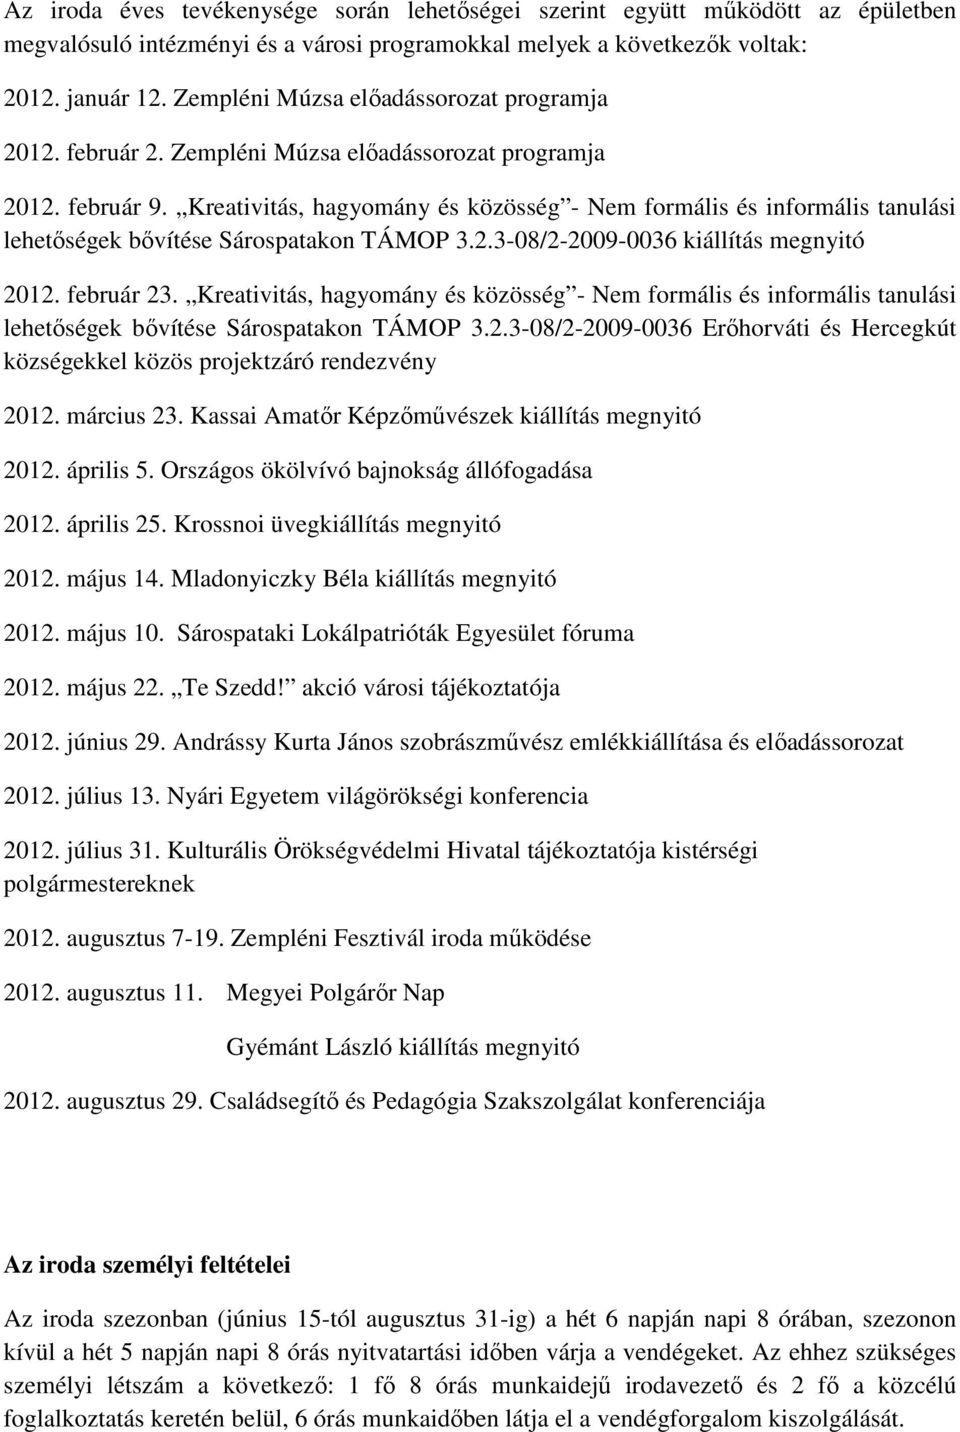 Kreativitás, hagyomány és közösség - Nem formális és informális tanulási lehetıségek bıvítése Sárospatakon TÁMOP 3.2.3-08/2-2009-0036 kiállítás megnyitó 2012. február 23.